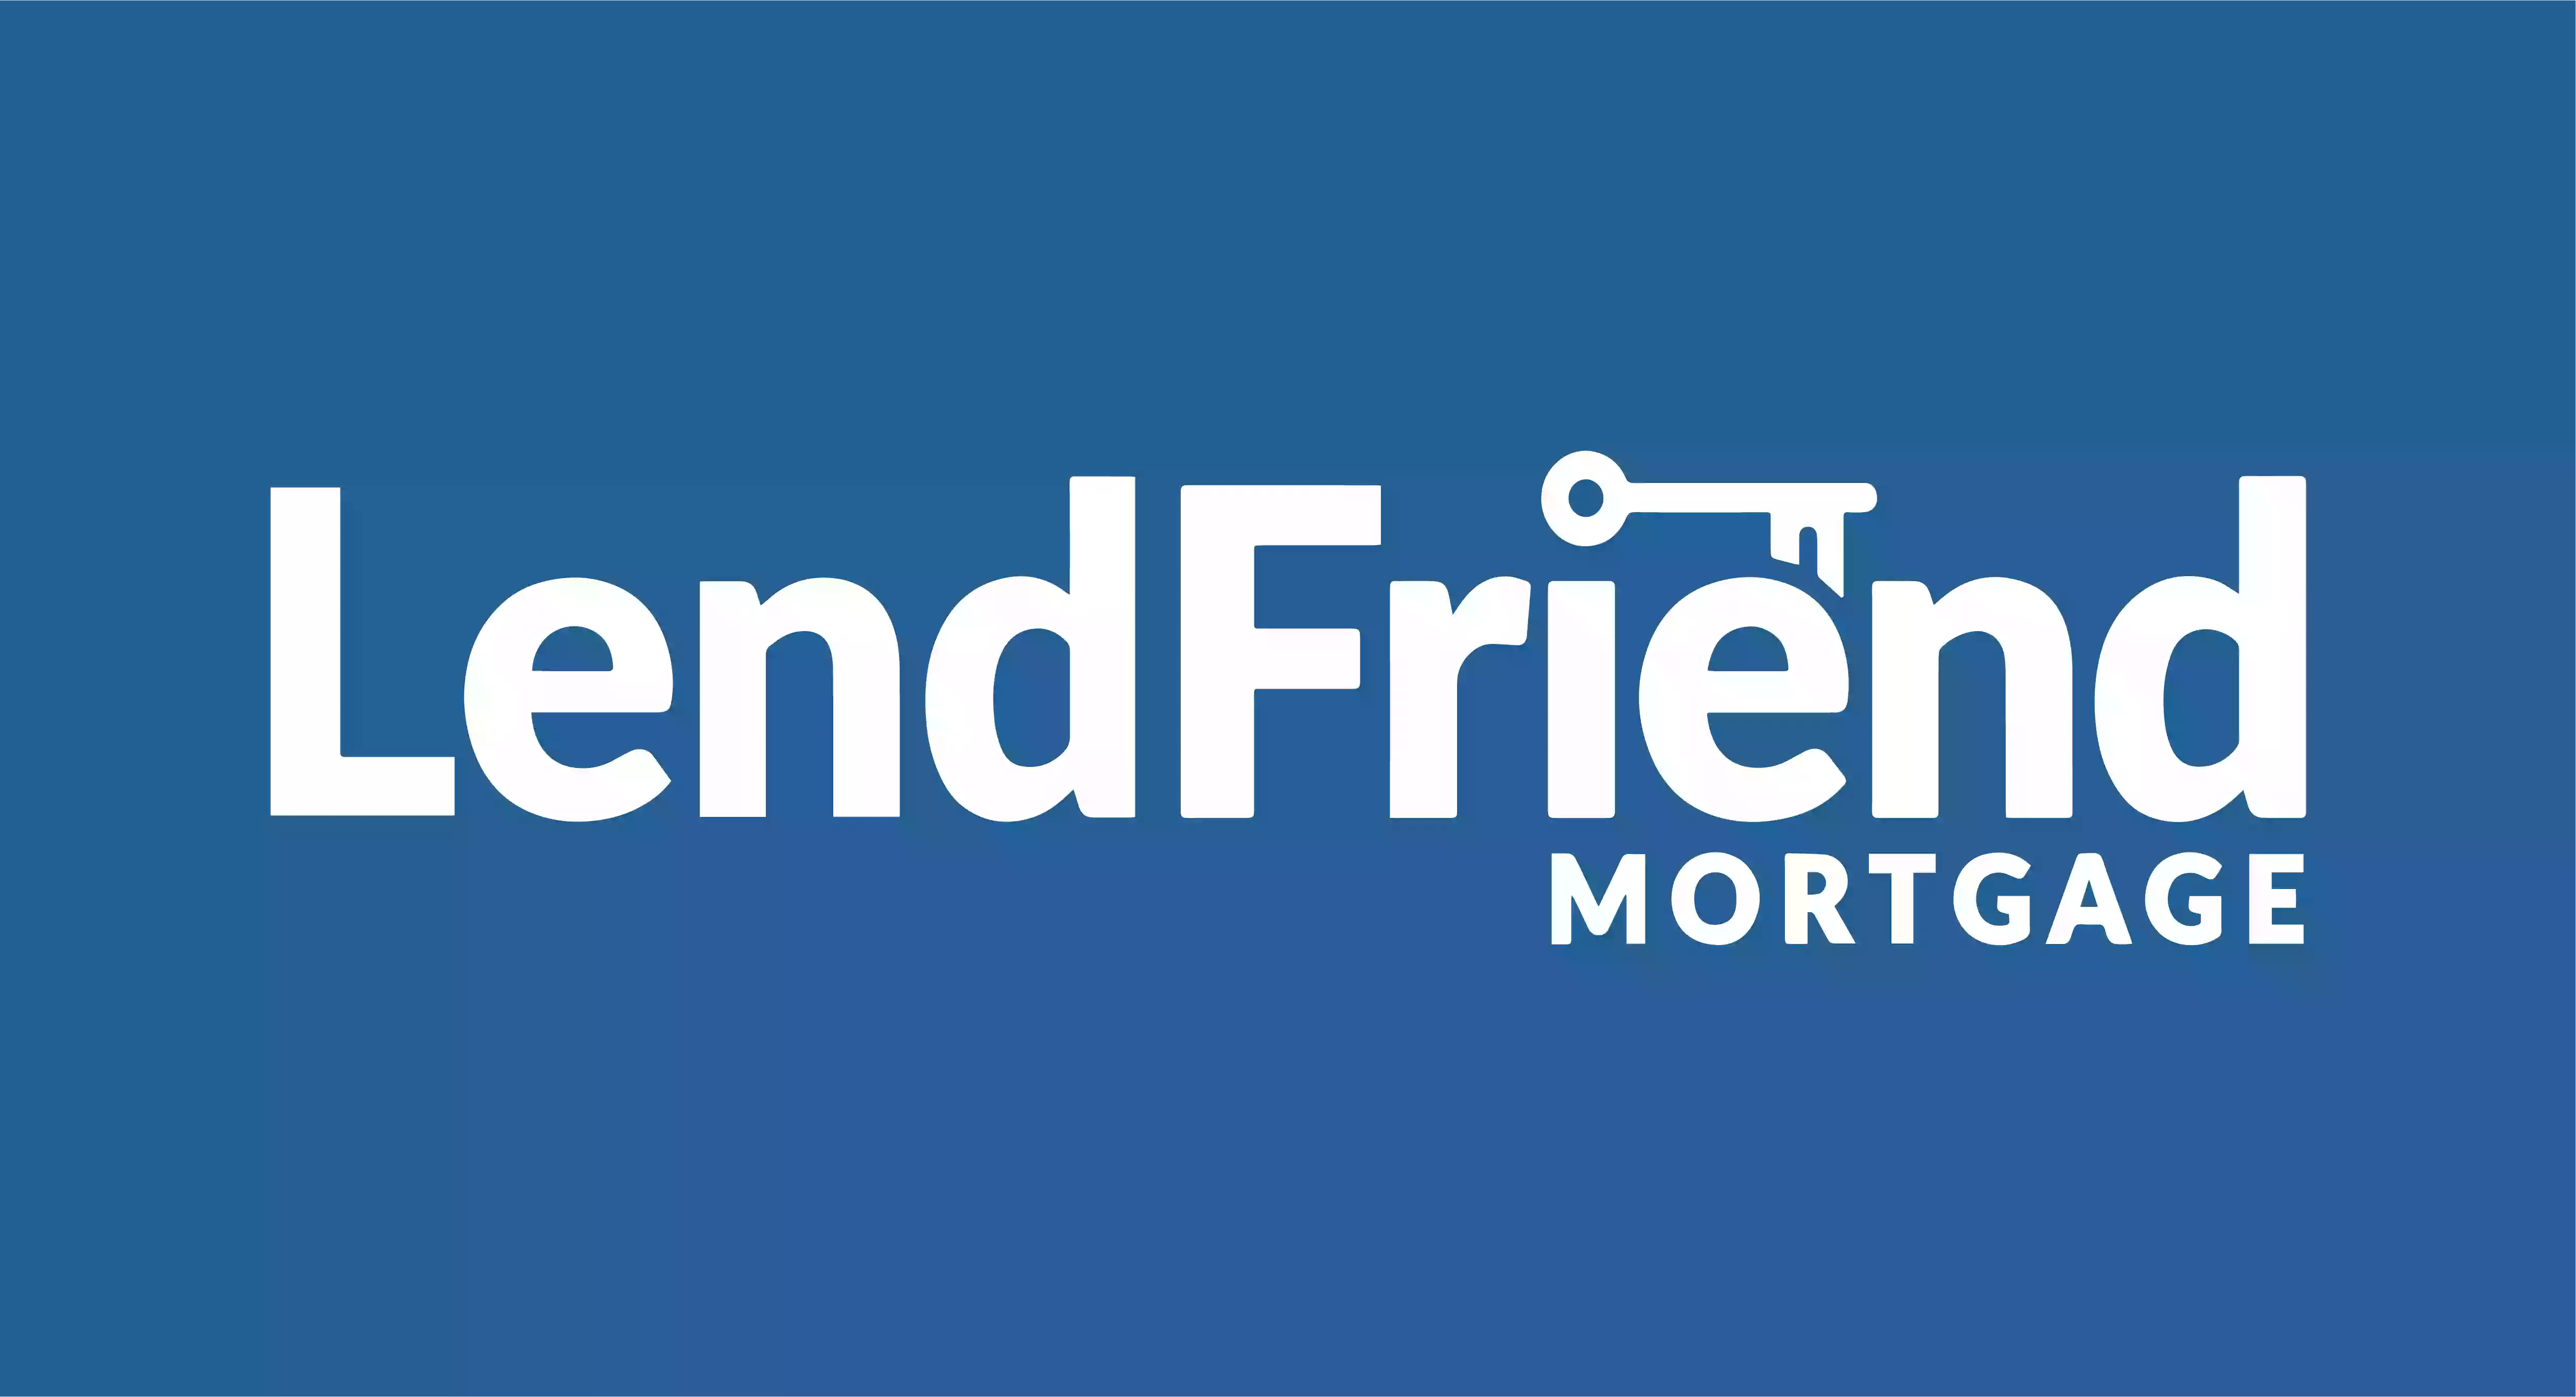 LendFriend Mortgage